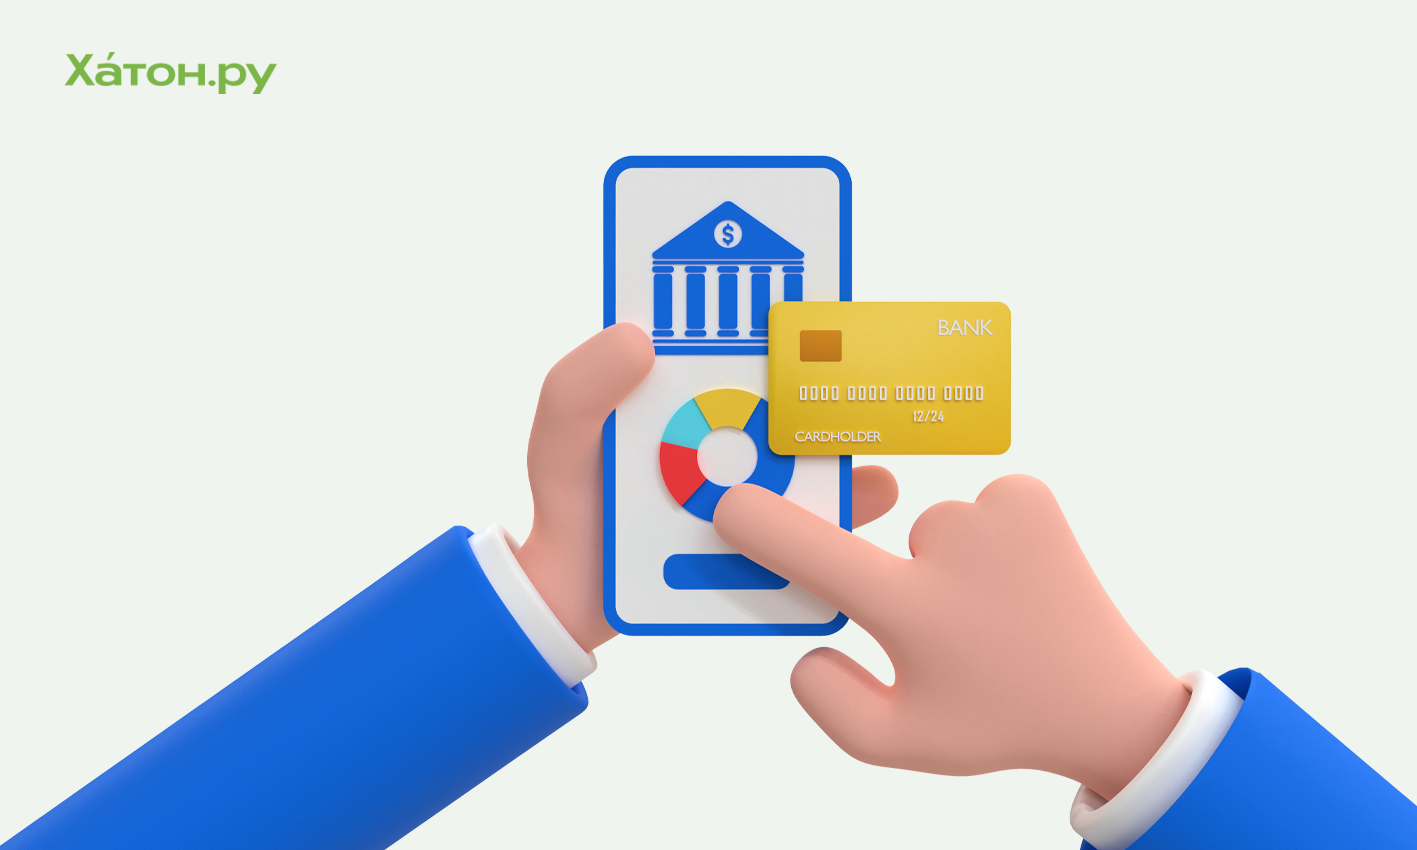 Банк «Уралсиб» начал обслуживать клиентов малого бизнеса в формате цифрового банка